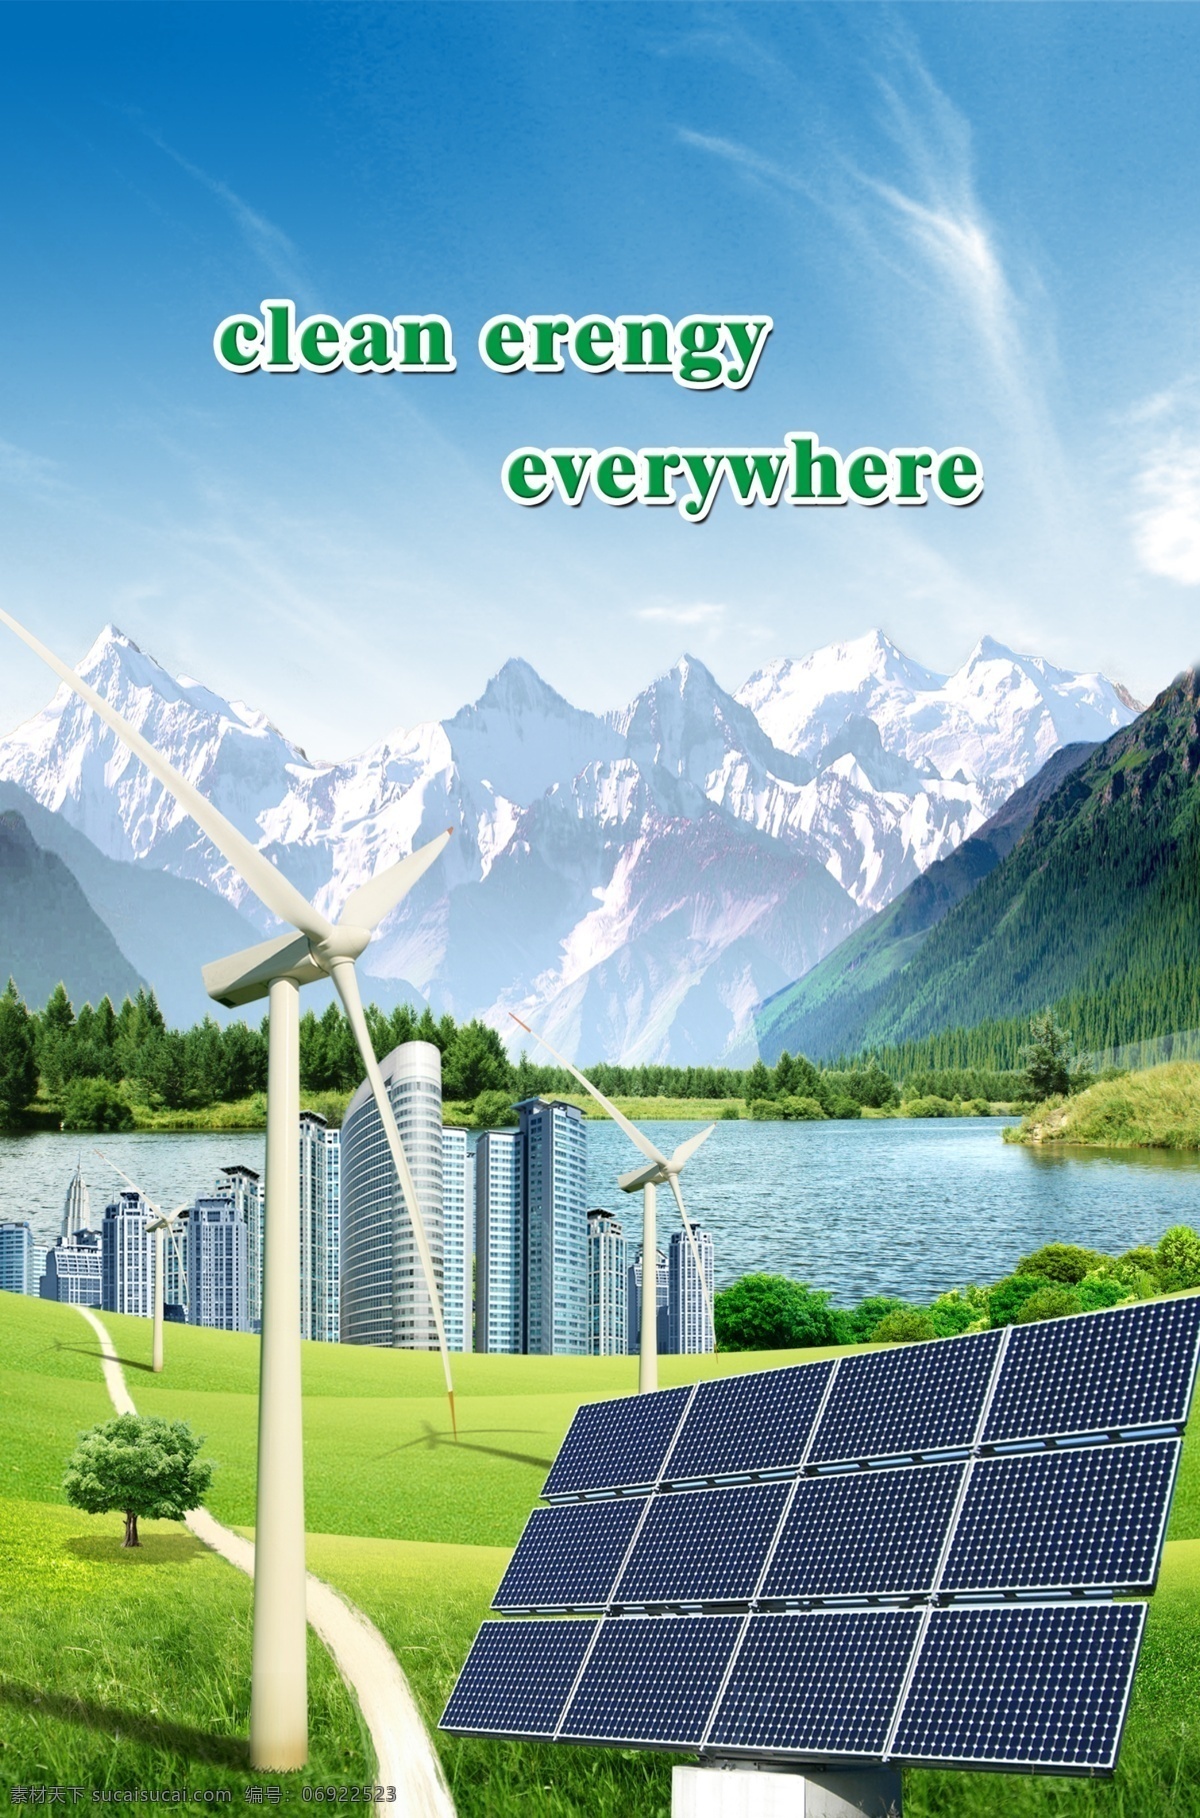 清洁能源 无处不在 模版下载 能源 节能 新能源 太阳能 风能 雪山 建筑物 光伏板 草地 路 山水 源文件